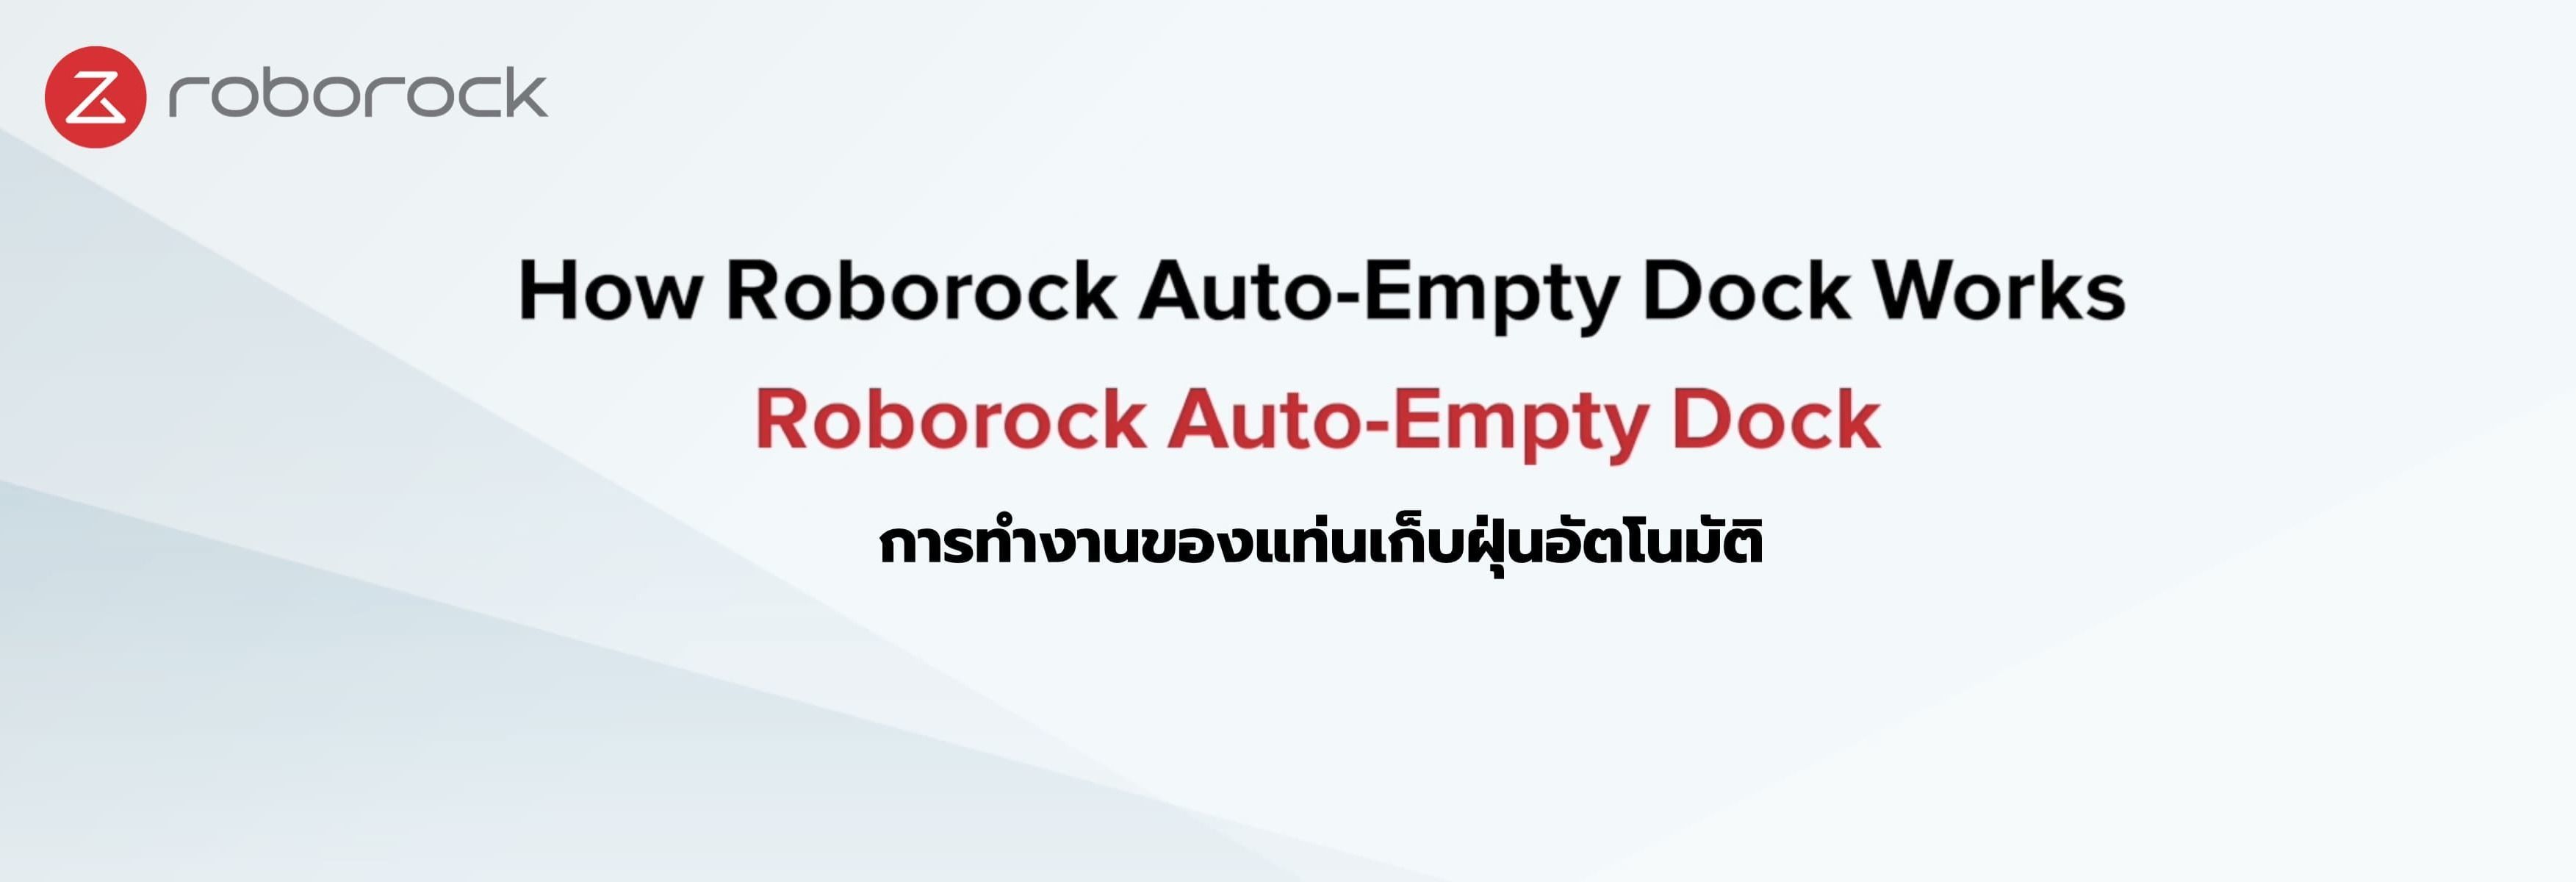 การทำงานของแท่นเก็บฝุ่นอัตโนมัติ Roborock Auto-Empty Dock